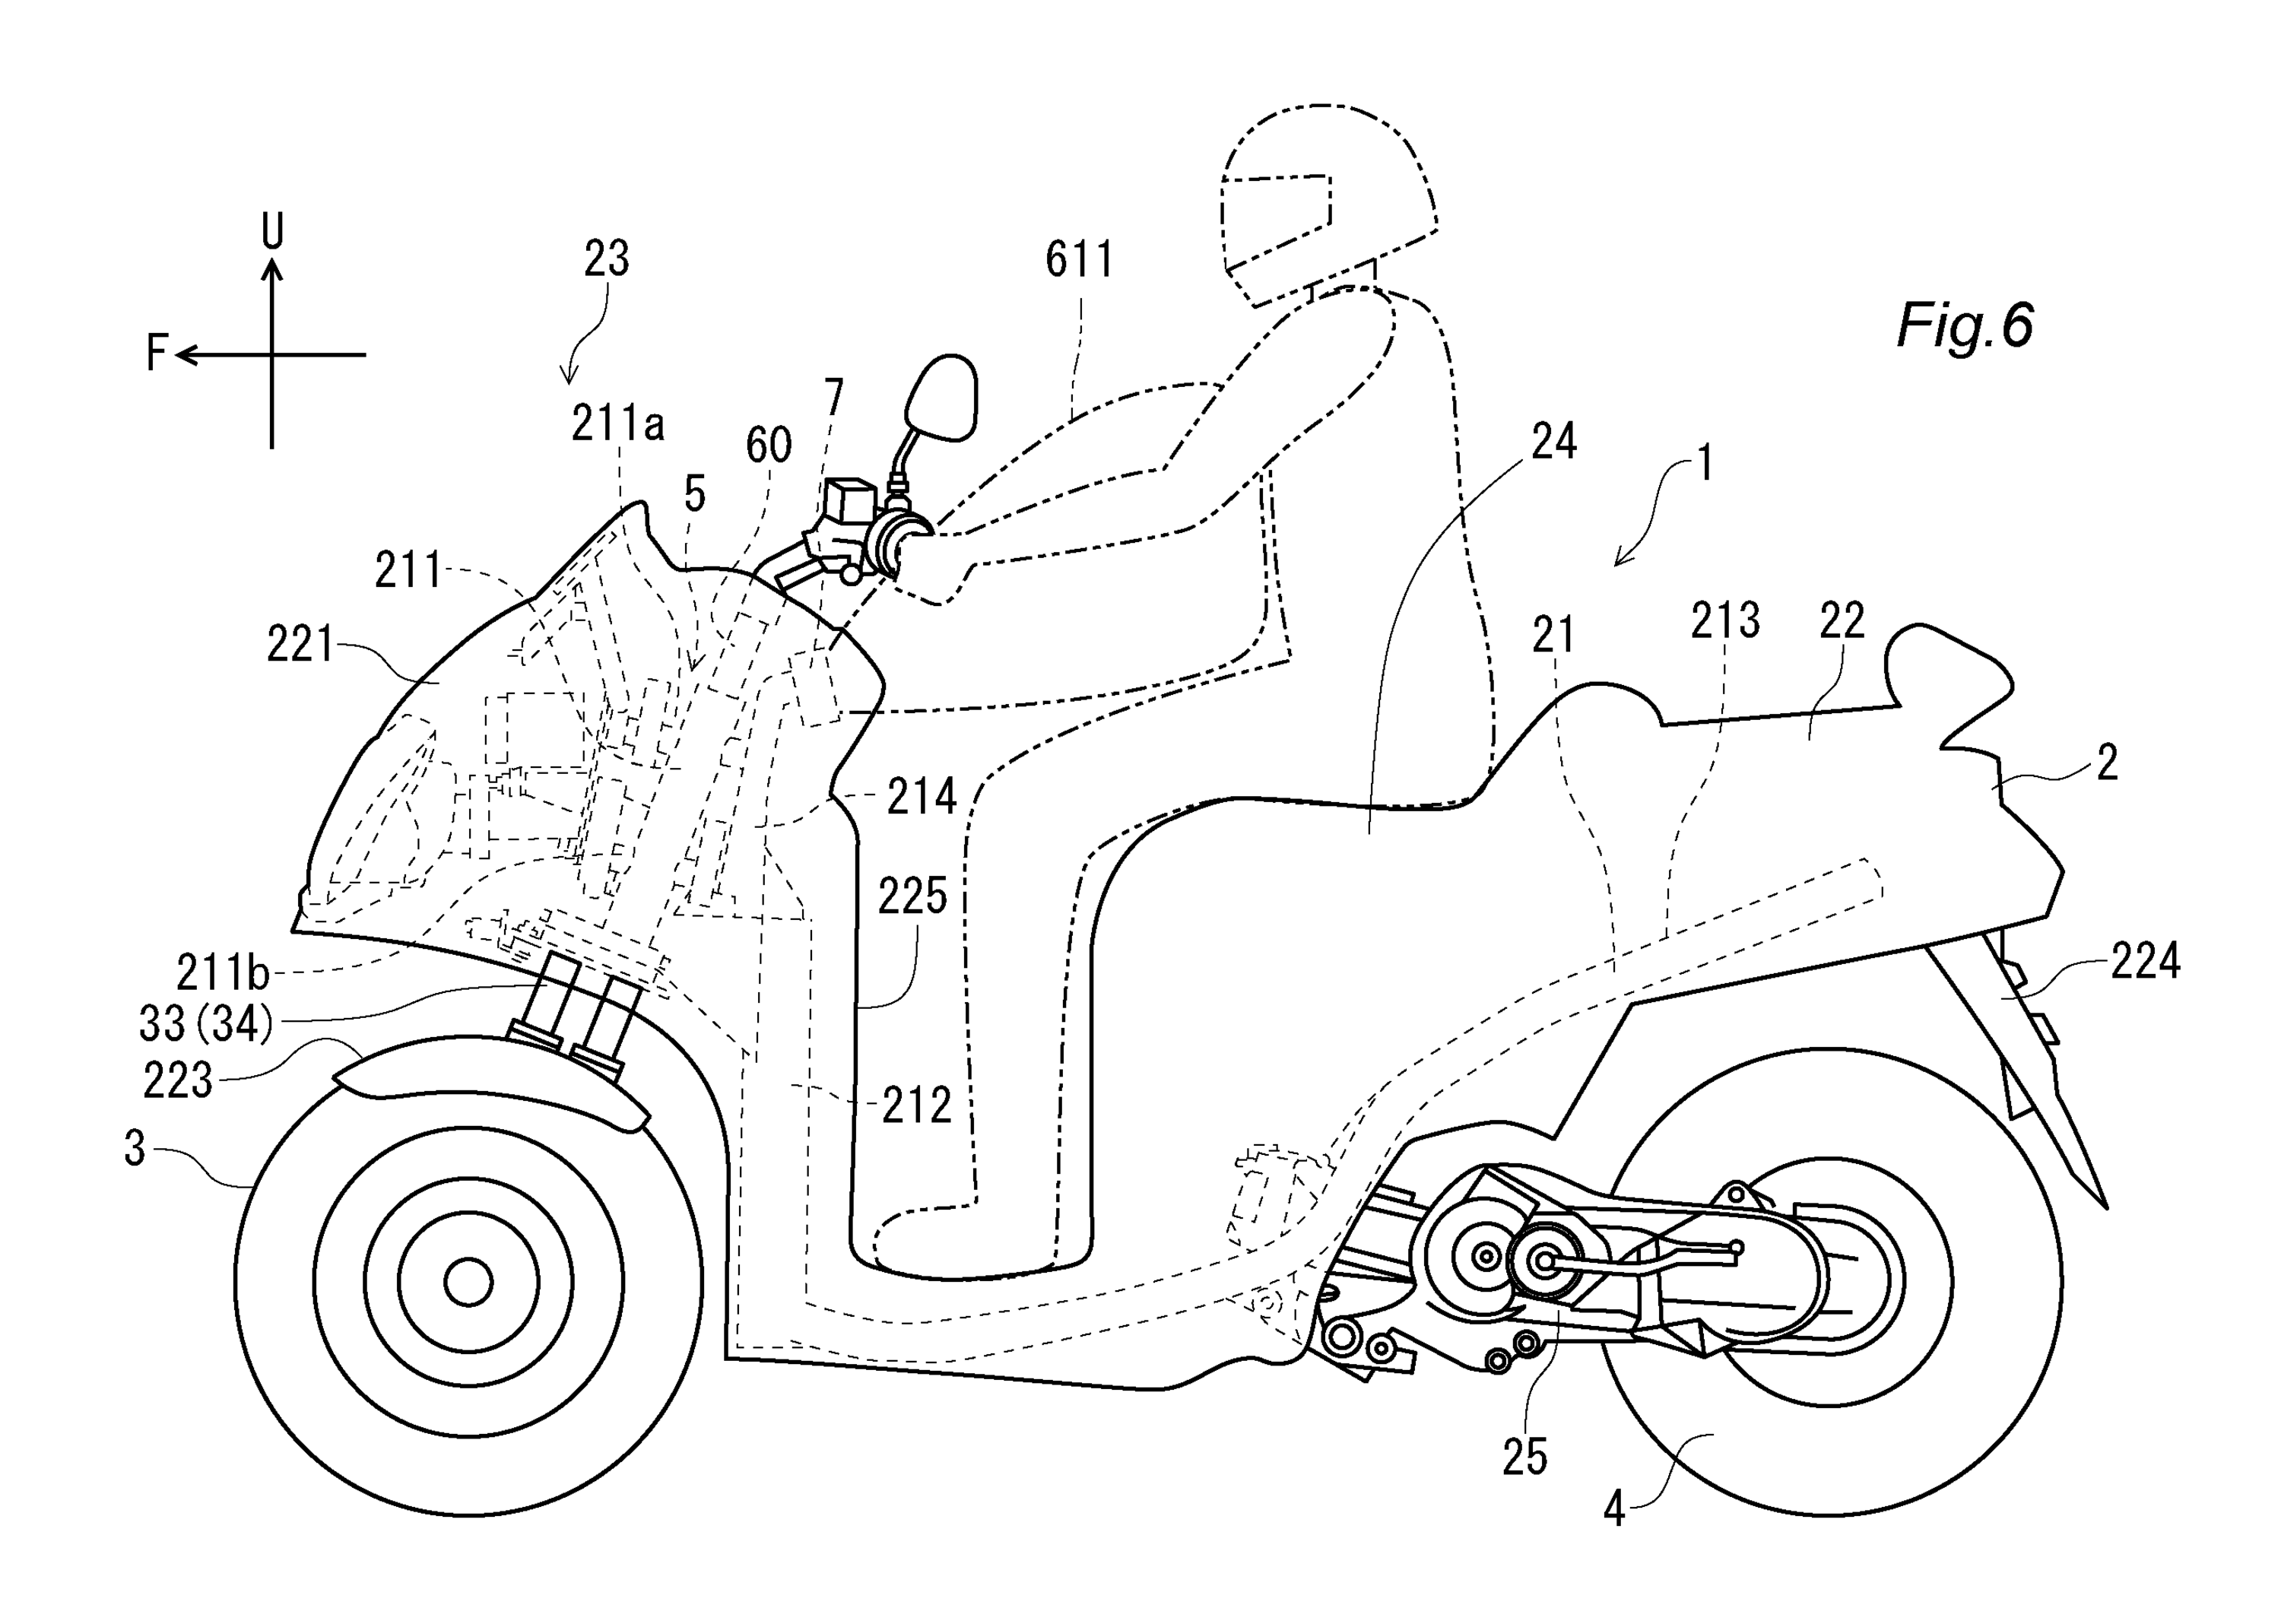 L&rsquo;Airbag per scooter e i brevetti Yamaha